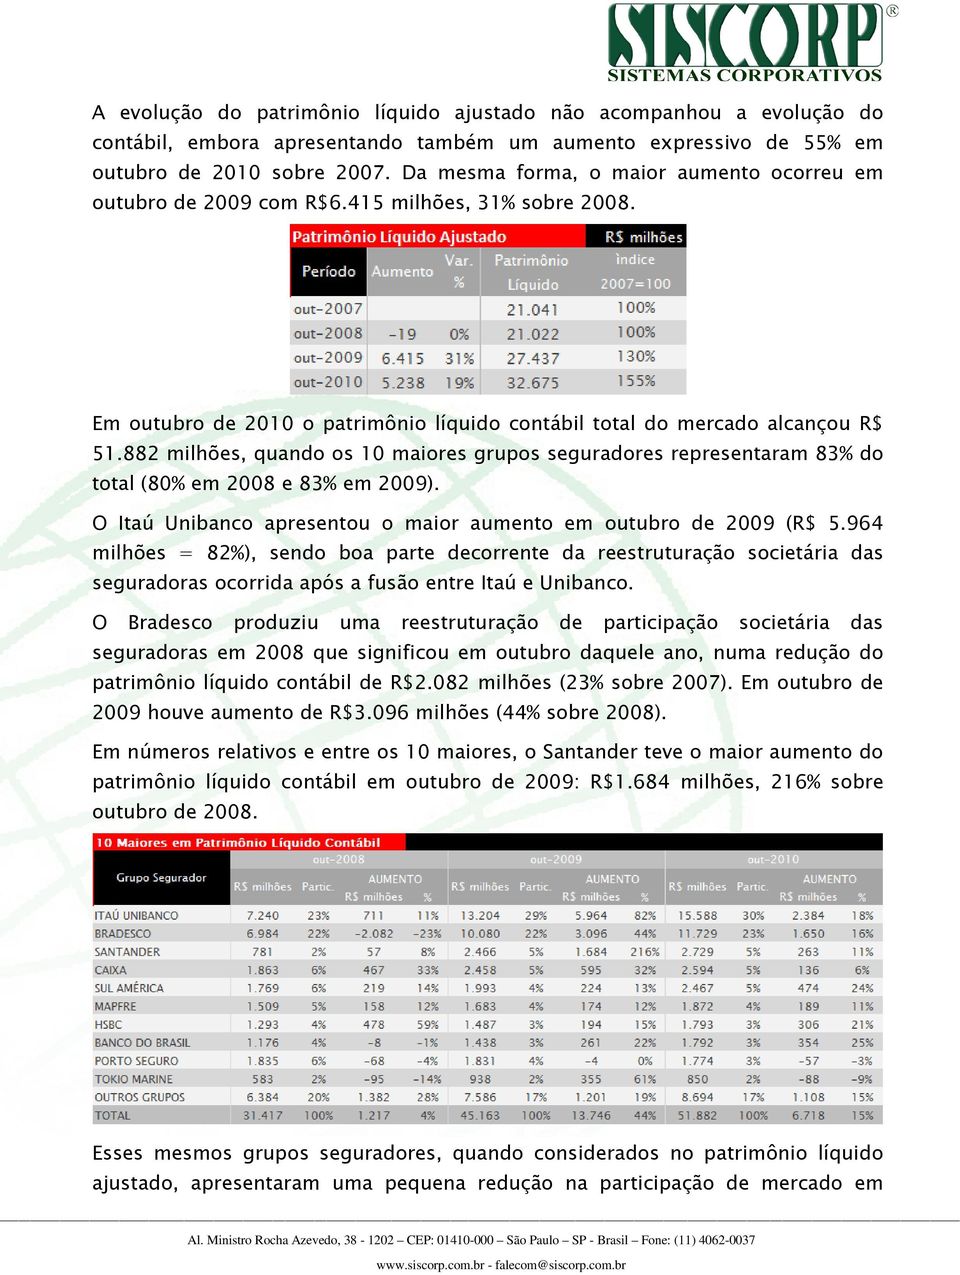 882 milhões, quando os 10 maiores grupos seguradores representaram 83% do total (80% em 2008 e 83% em 2009). O Itaú Unibanco apresentou o maior aumento em outubro de 2009 (R$ 5.